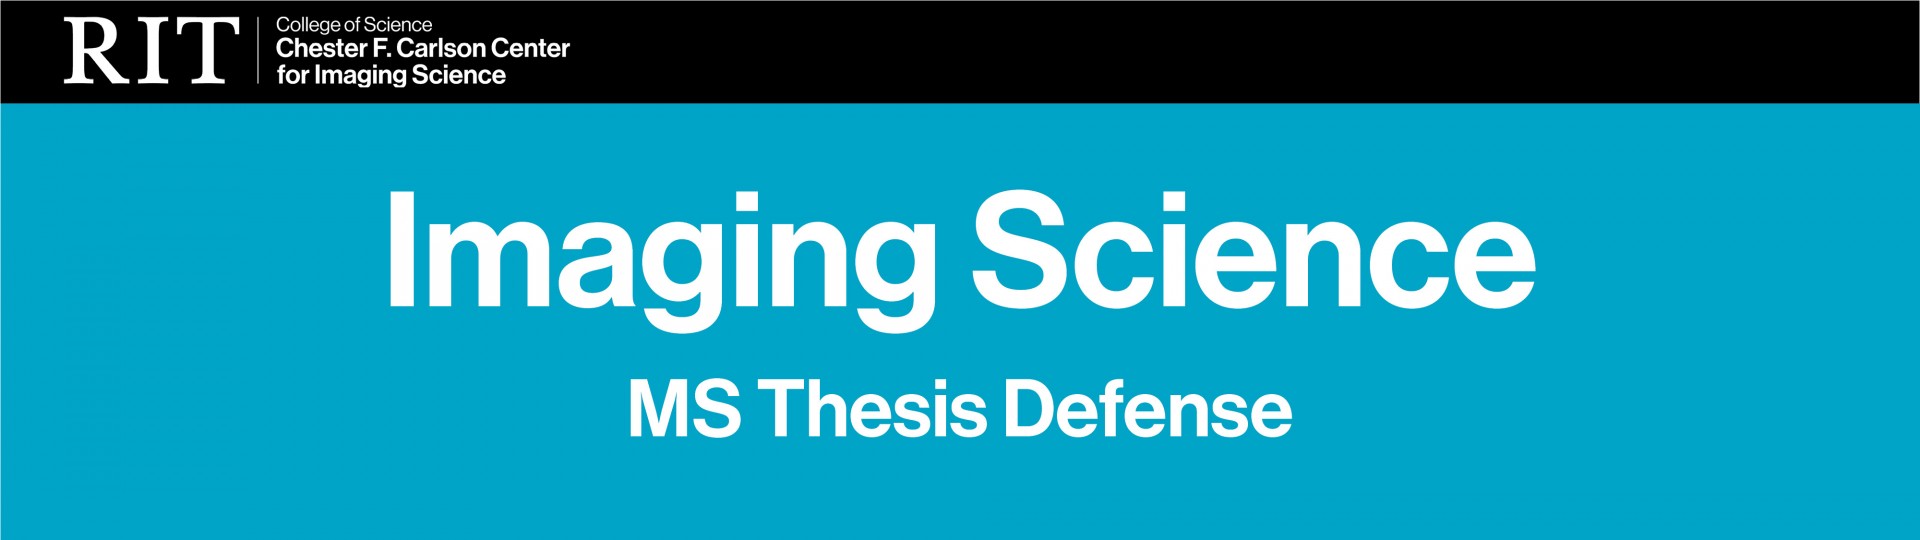 imaging science ms thesis defense joseph carrock